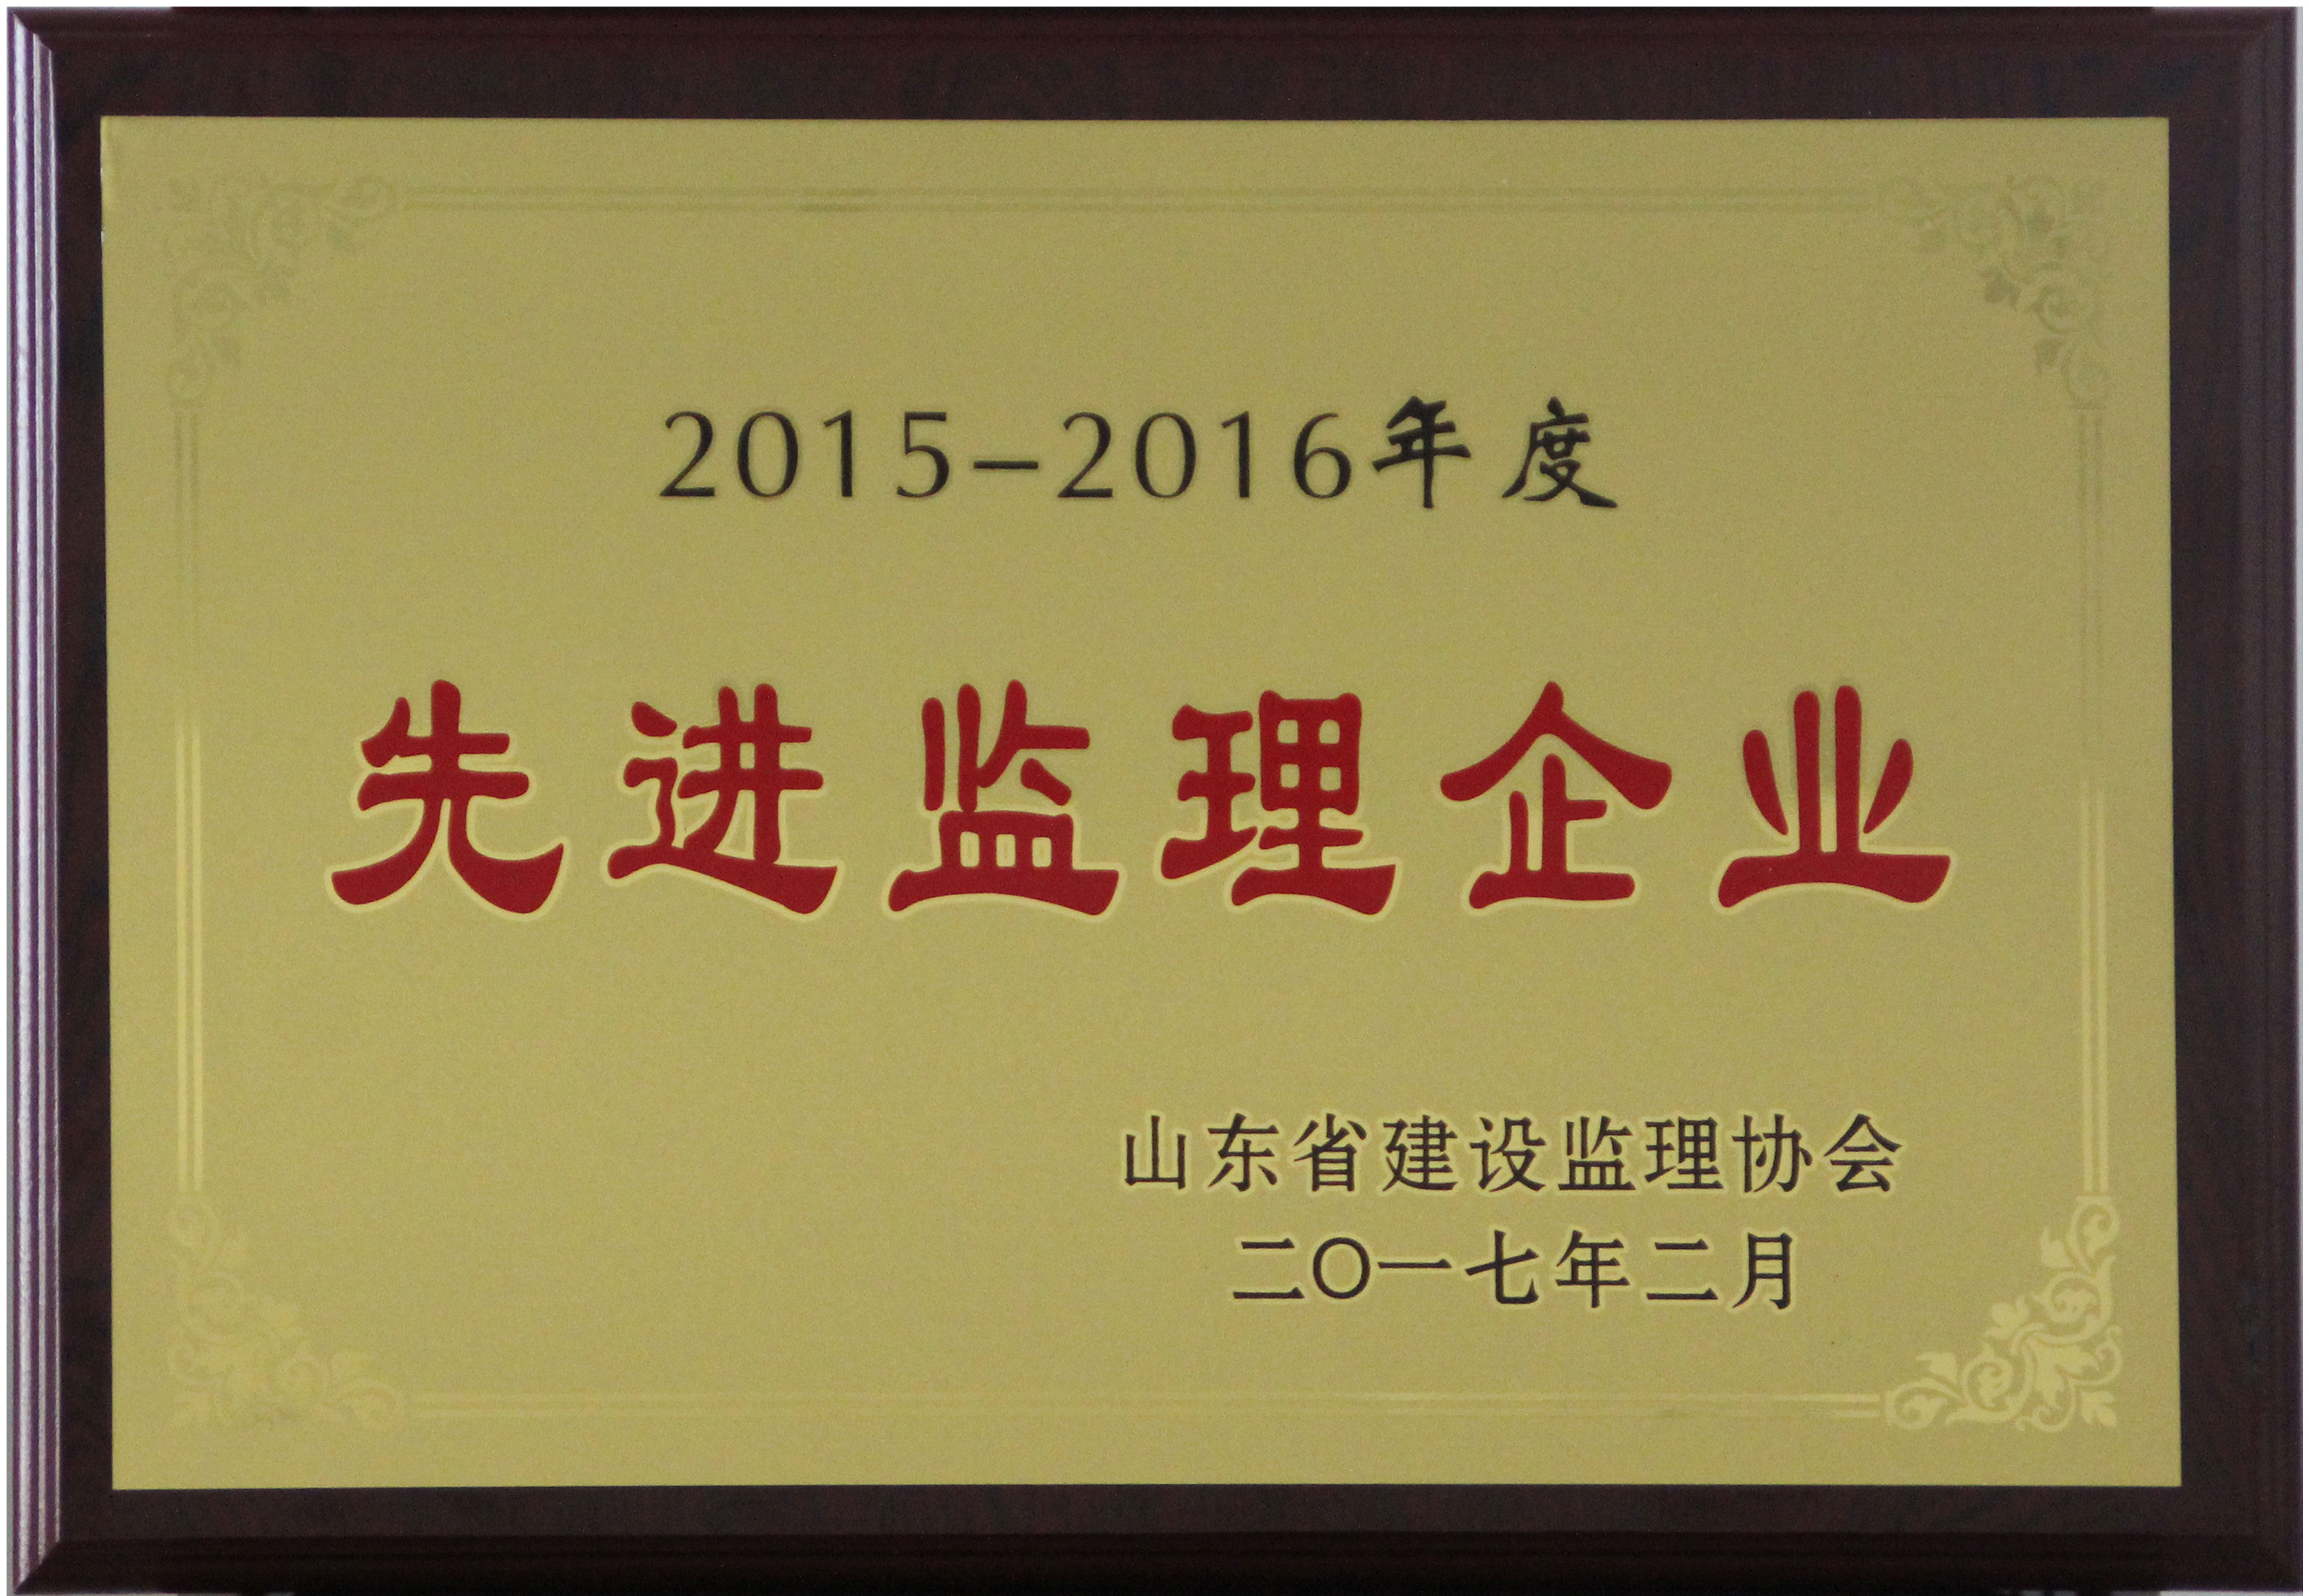 我公司荣获山东省2015-2016年度先进监理企业荣誉